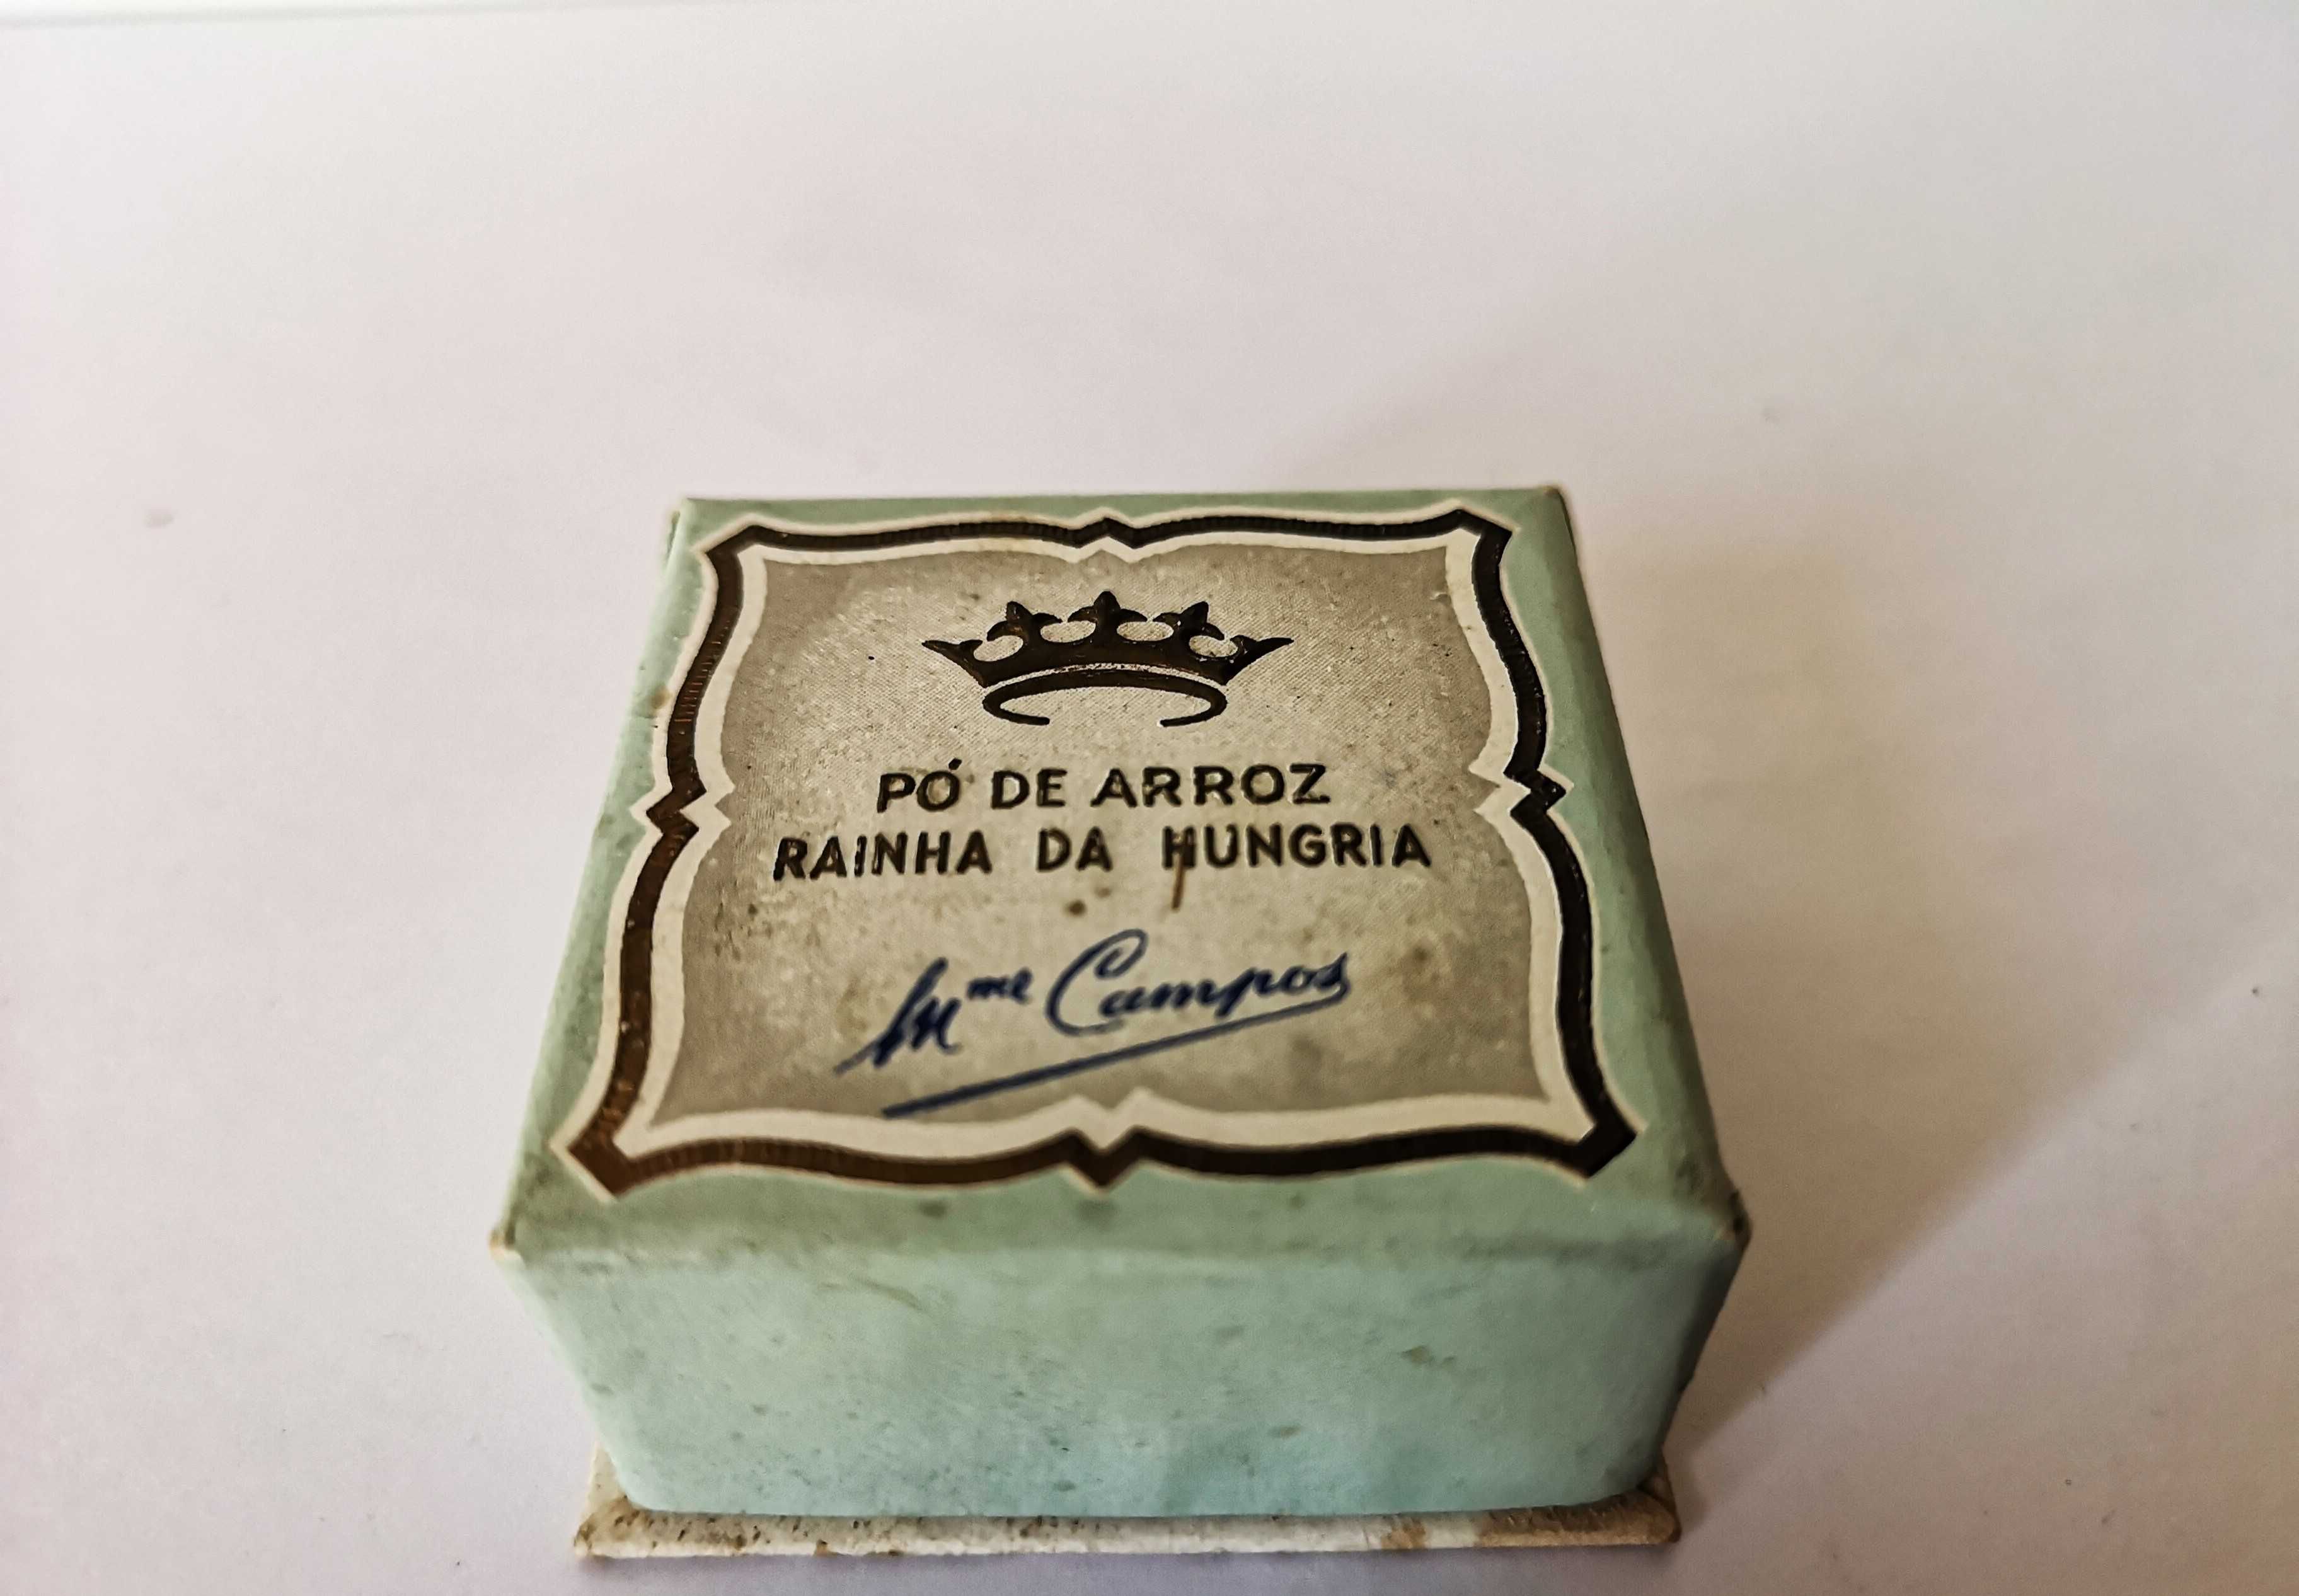 1 Antiga Caixa de PÓ de ARROZ - Mme CAMPOS - Rainha da Hungria